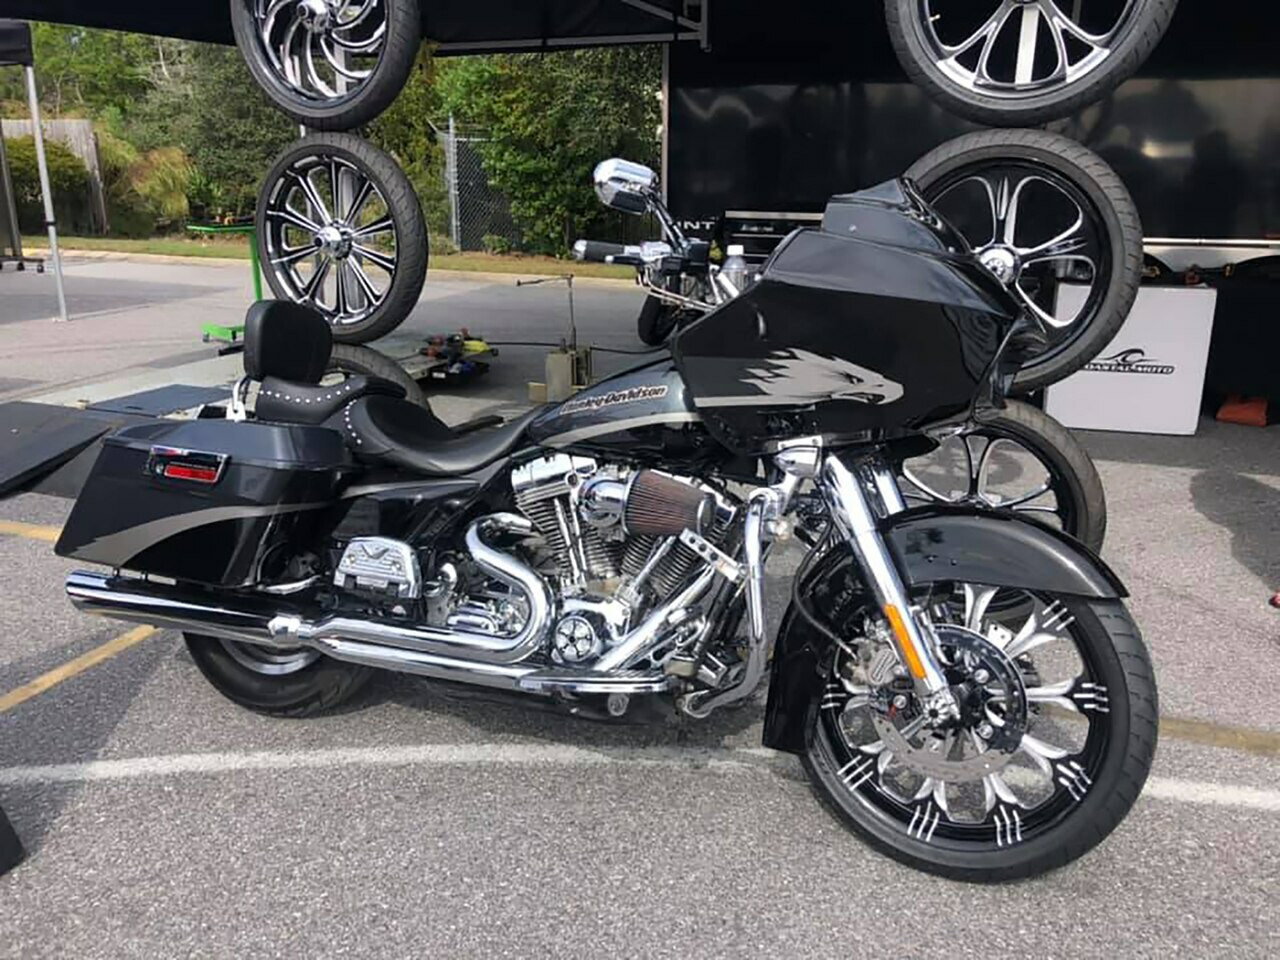 Harley Davidson Fat boy Wheels Warlock